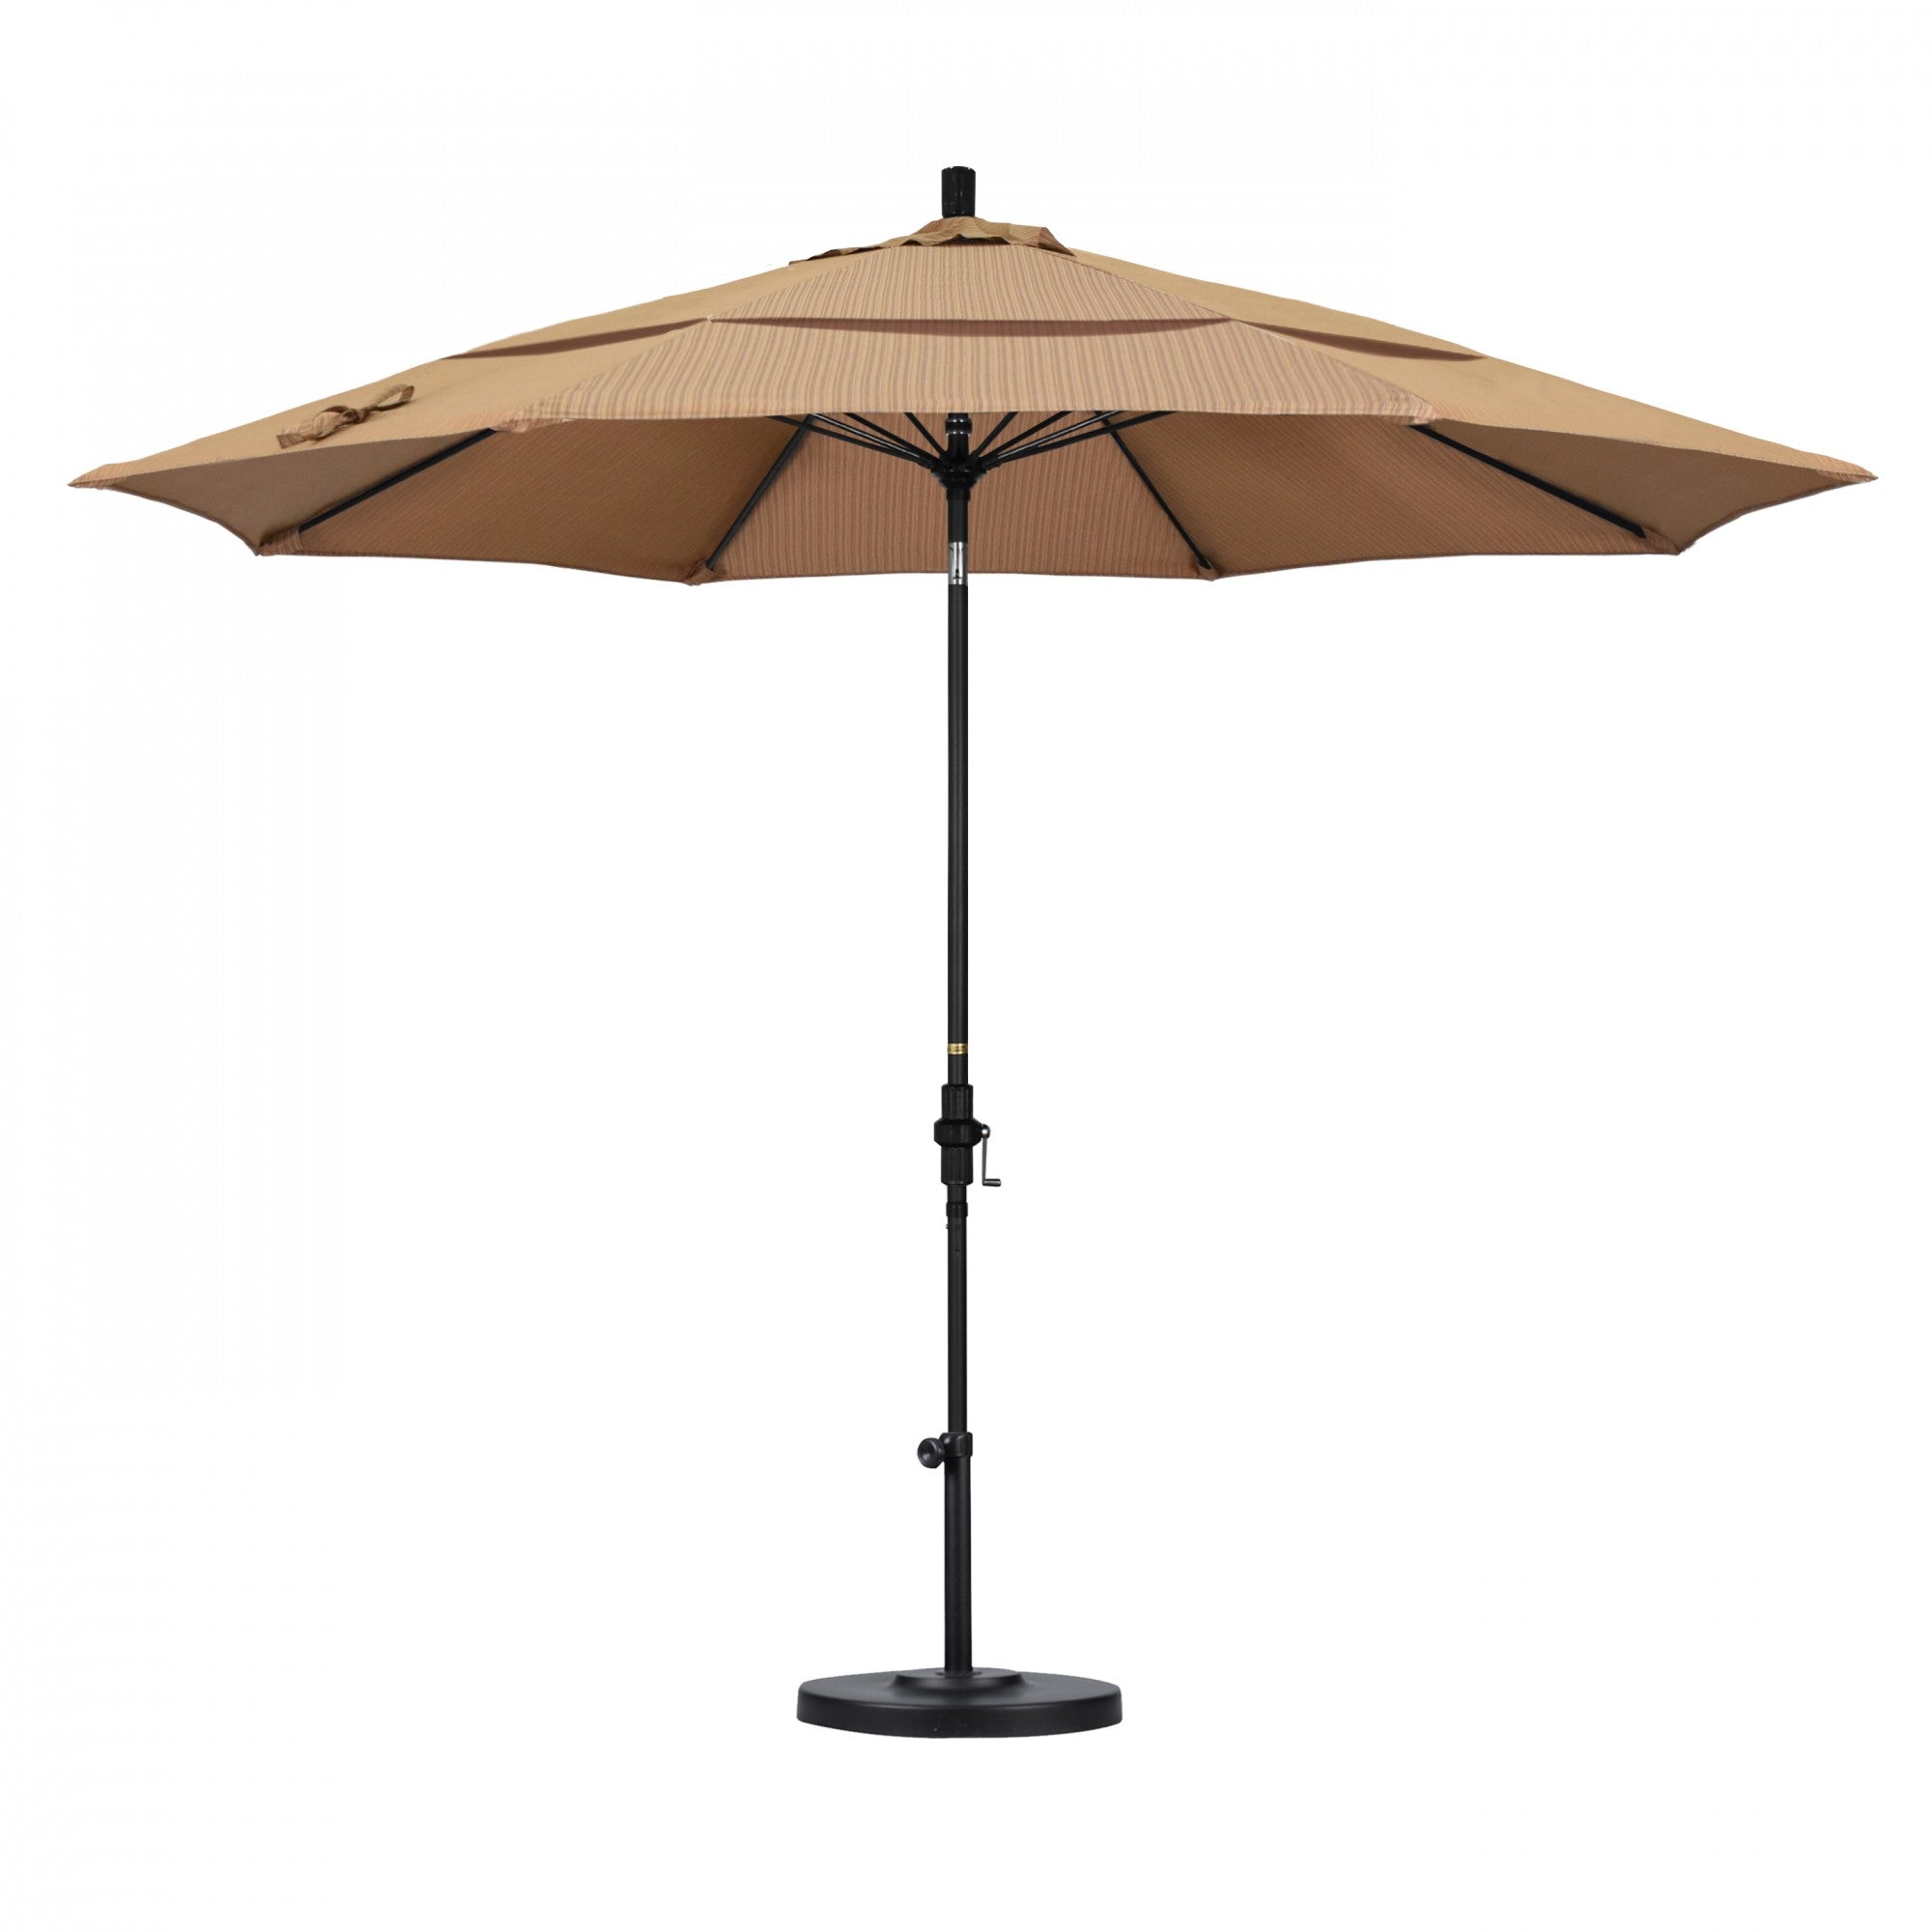 California Umbrella - 11' - Patio Umbrella Umbrella - Aluminum Pole - Terrace Sequoia - Olefin - GSCUF118705-FD10-DWV